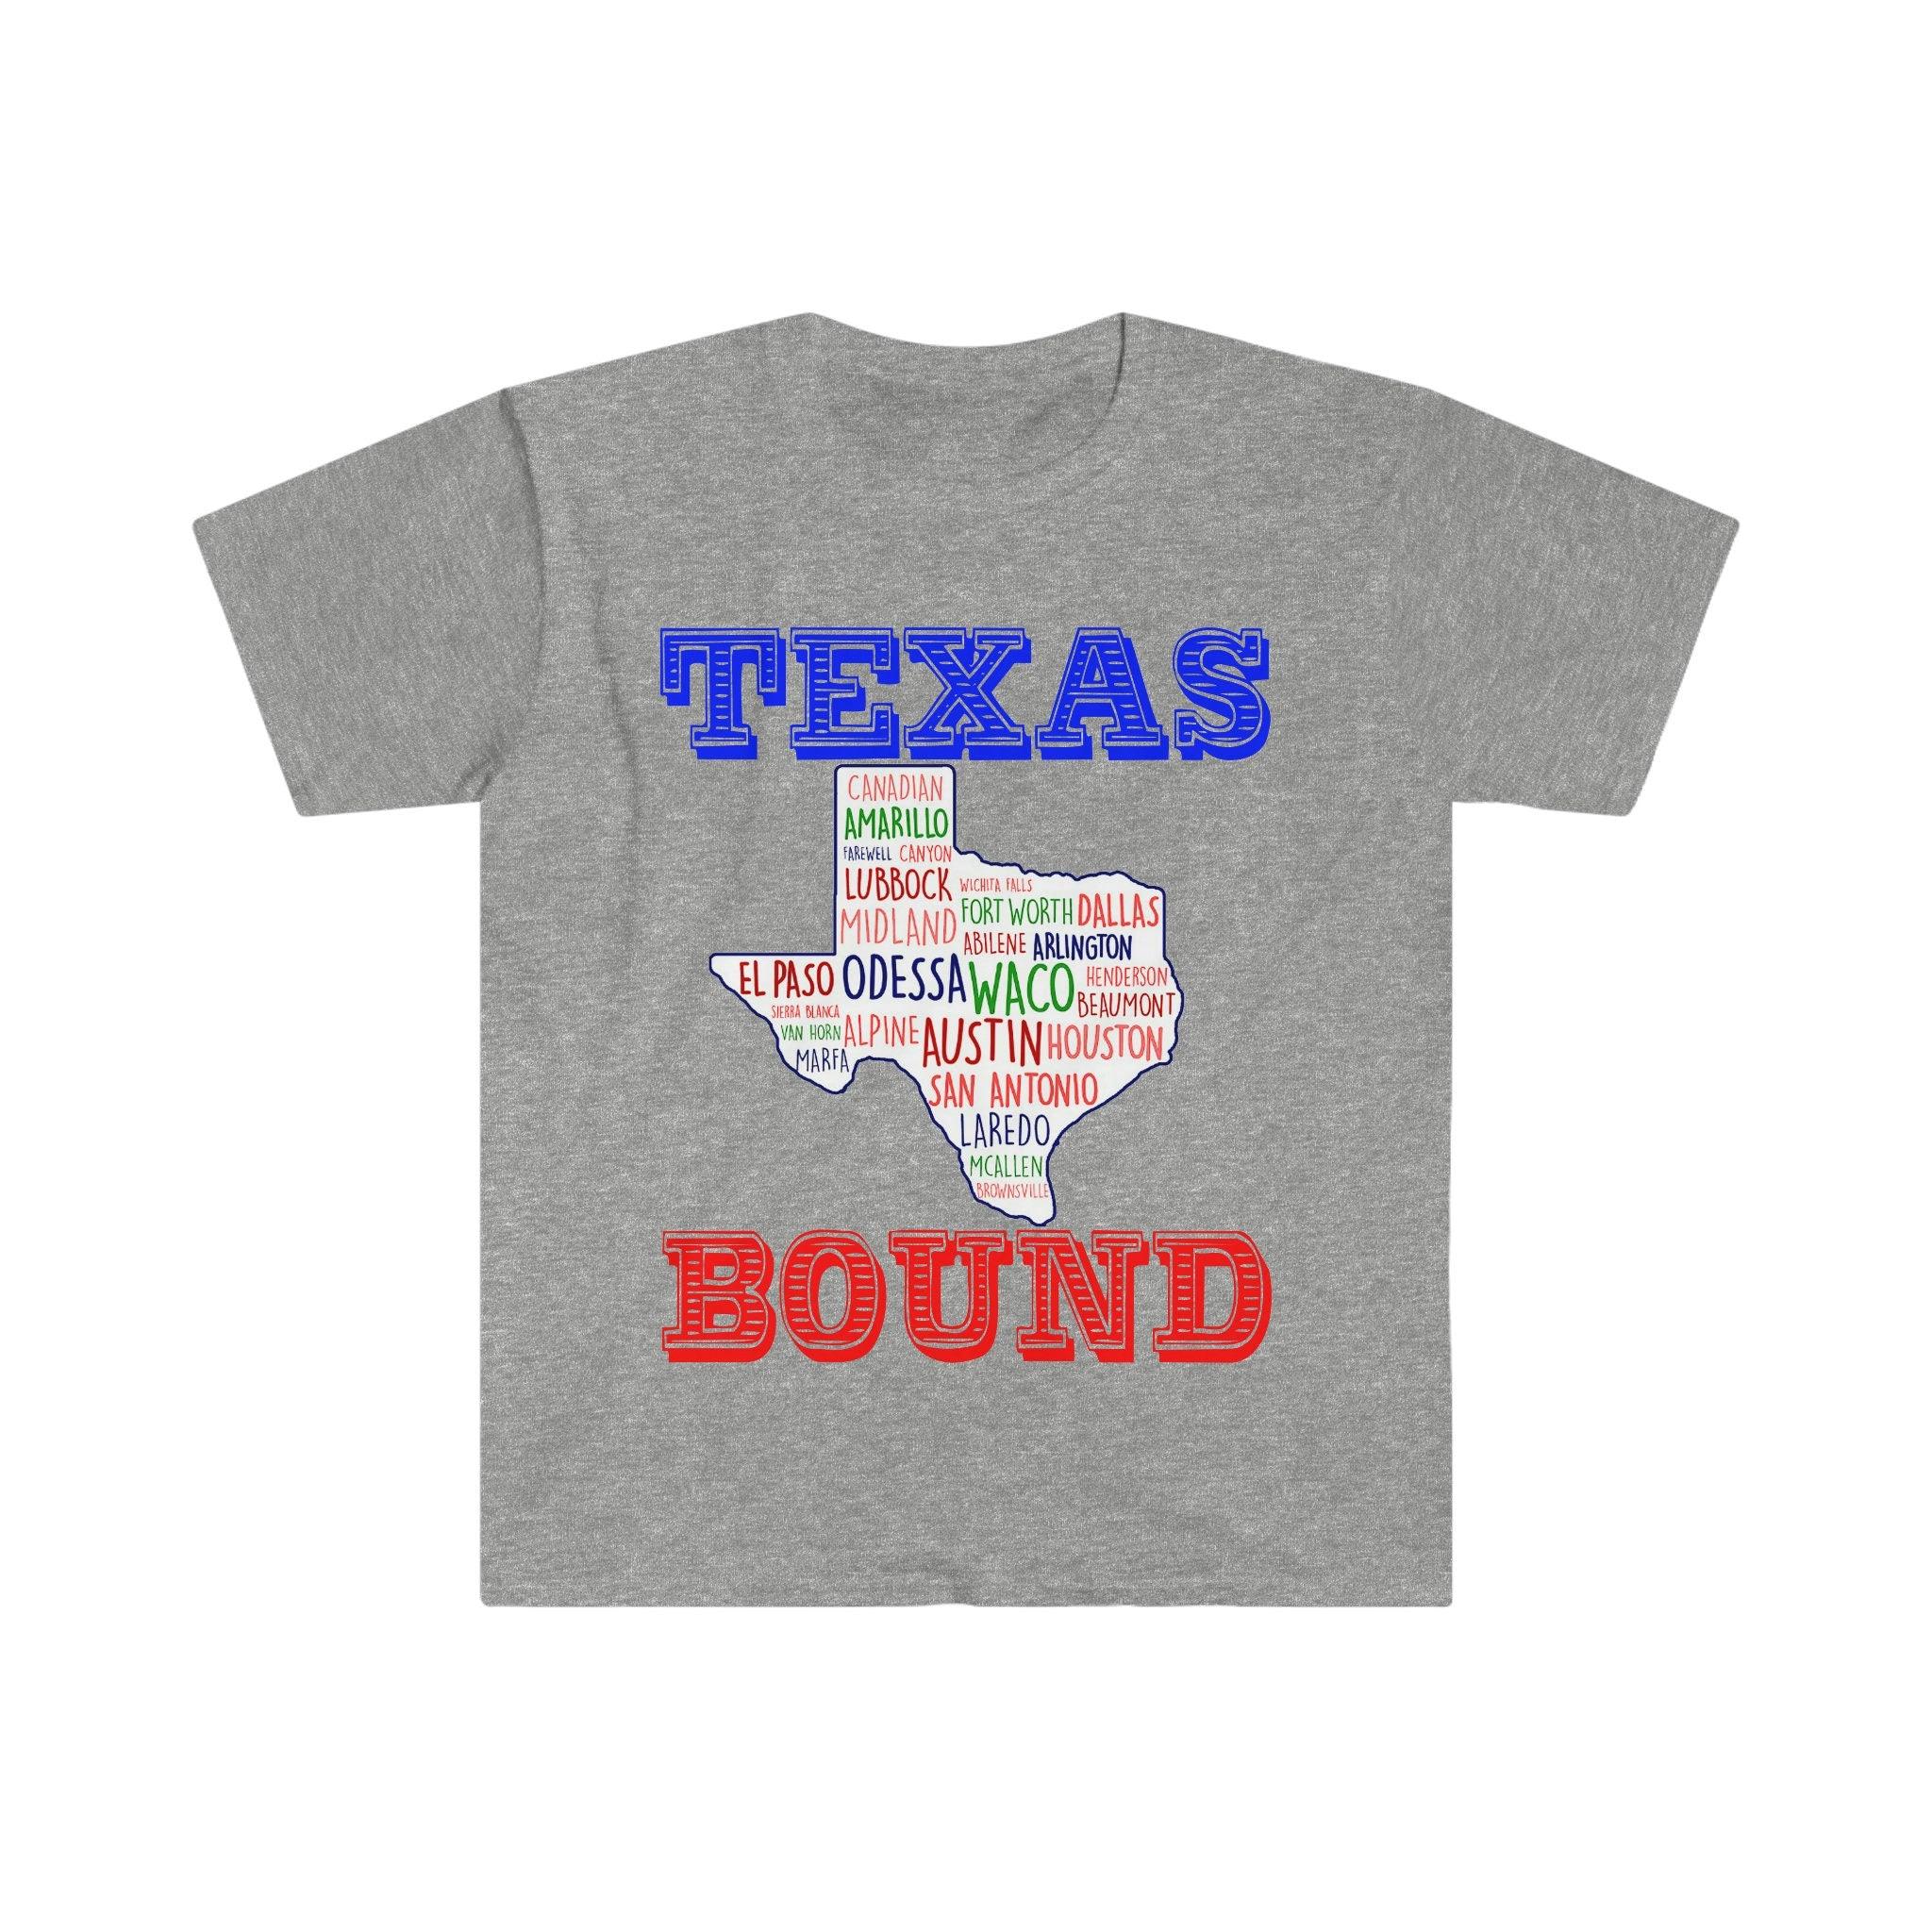 Texas Bound | Texas Places pólók |Texas térképes pólók, Austinba költözés , Üdvözöljük a Texas Giftben, Texas Bound, Új Texasban, Költözés a DFW-hez Beat biden adóemelés, Biden adóterv, tengerparti liberális, Houston, Austinba költözés, Költözés to DFW, Moving To Texas, Moving to Texas Mug, New in Texas, republikánus, póló, póló, Texas kötött, texasi lány, texasi republikánus itt - plusminusco.com